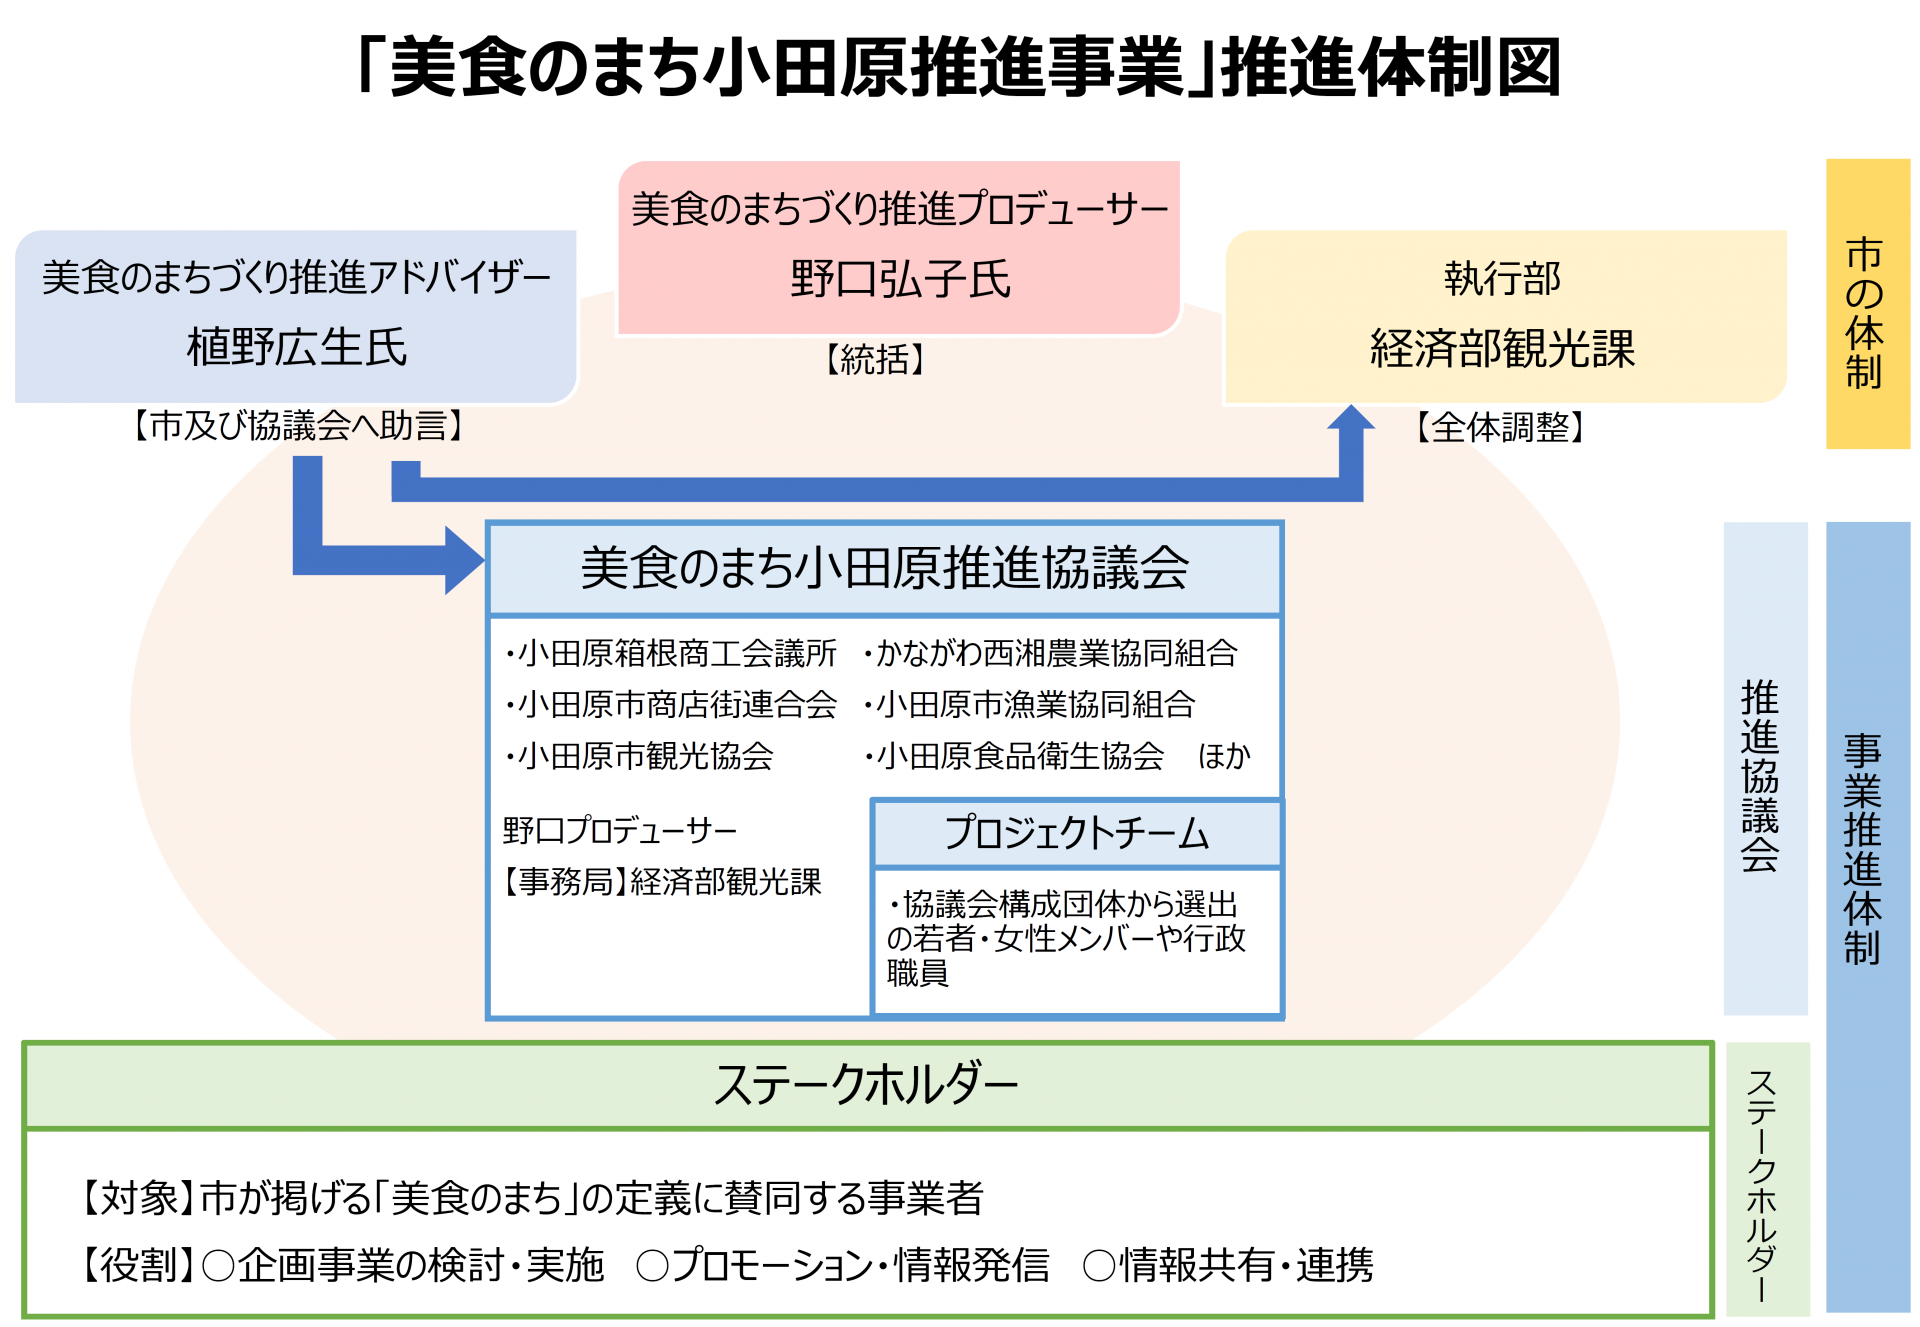 美食のまち小田原推進協議会体制図画像。下にPDF版があります。